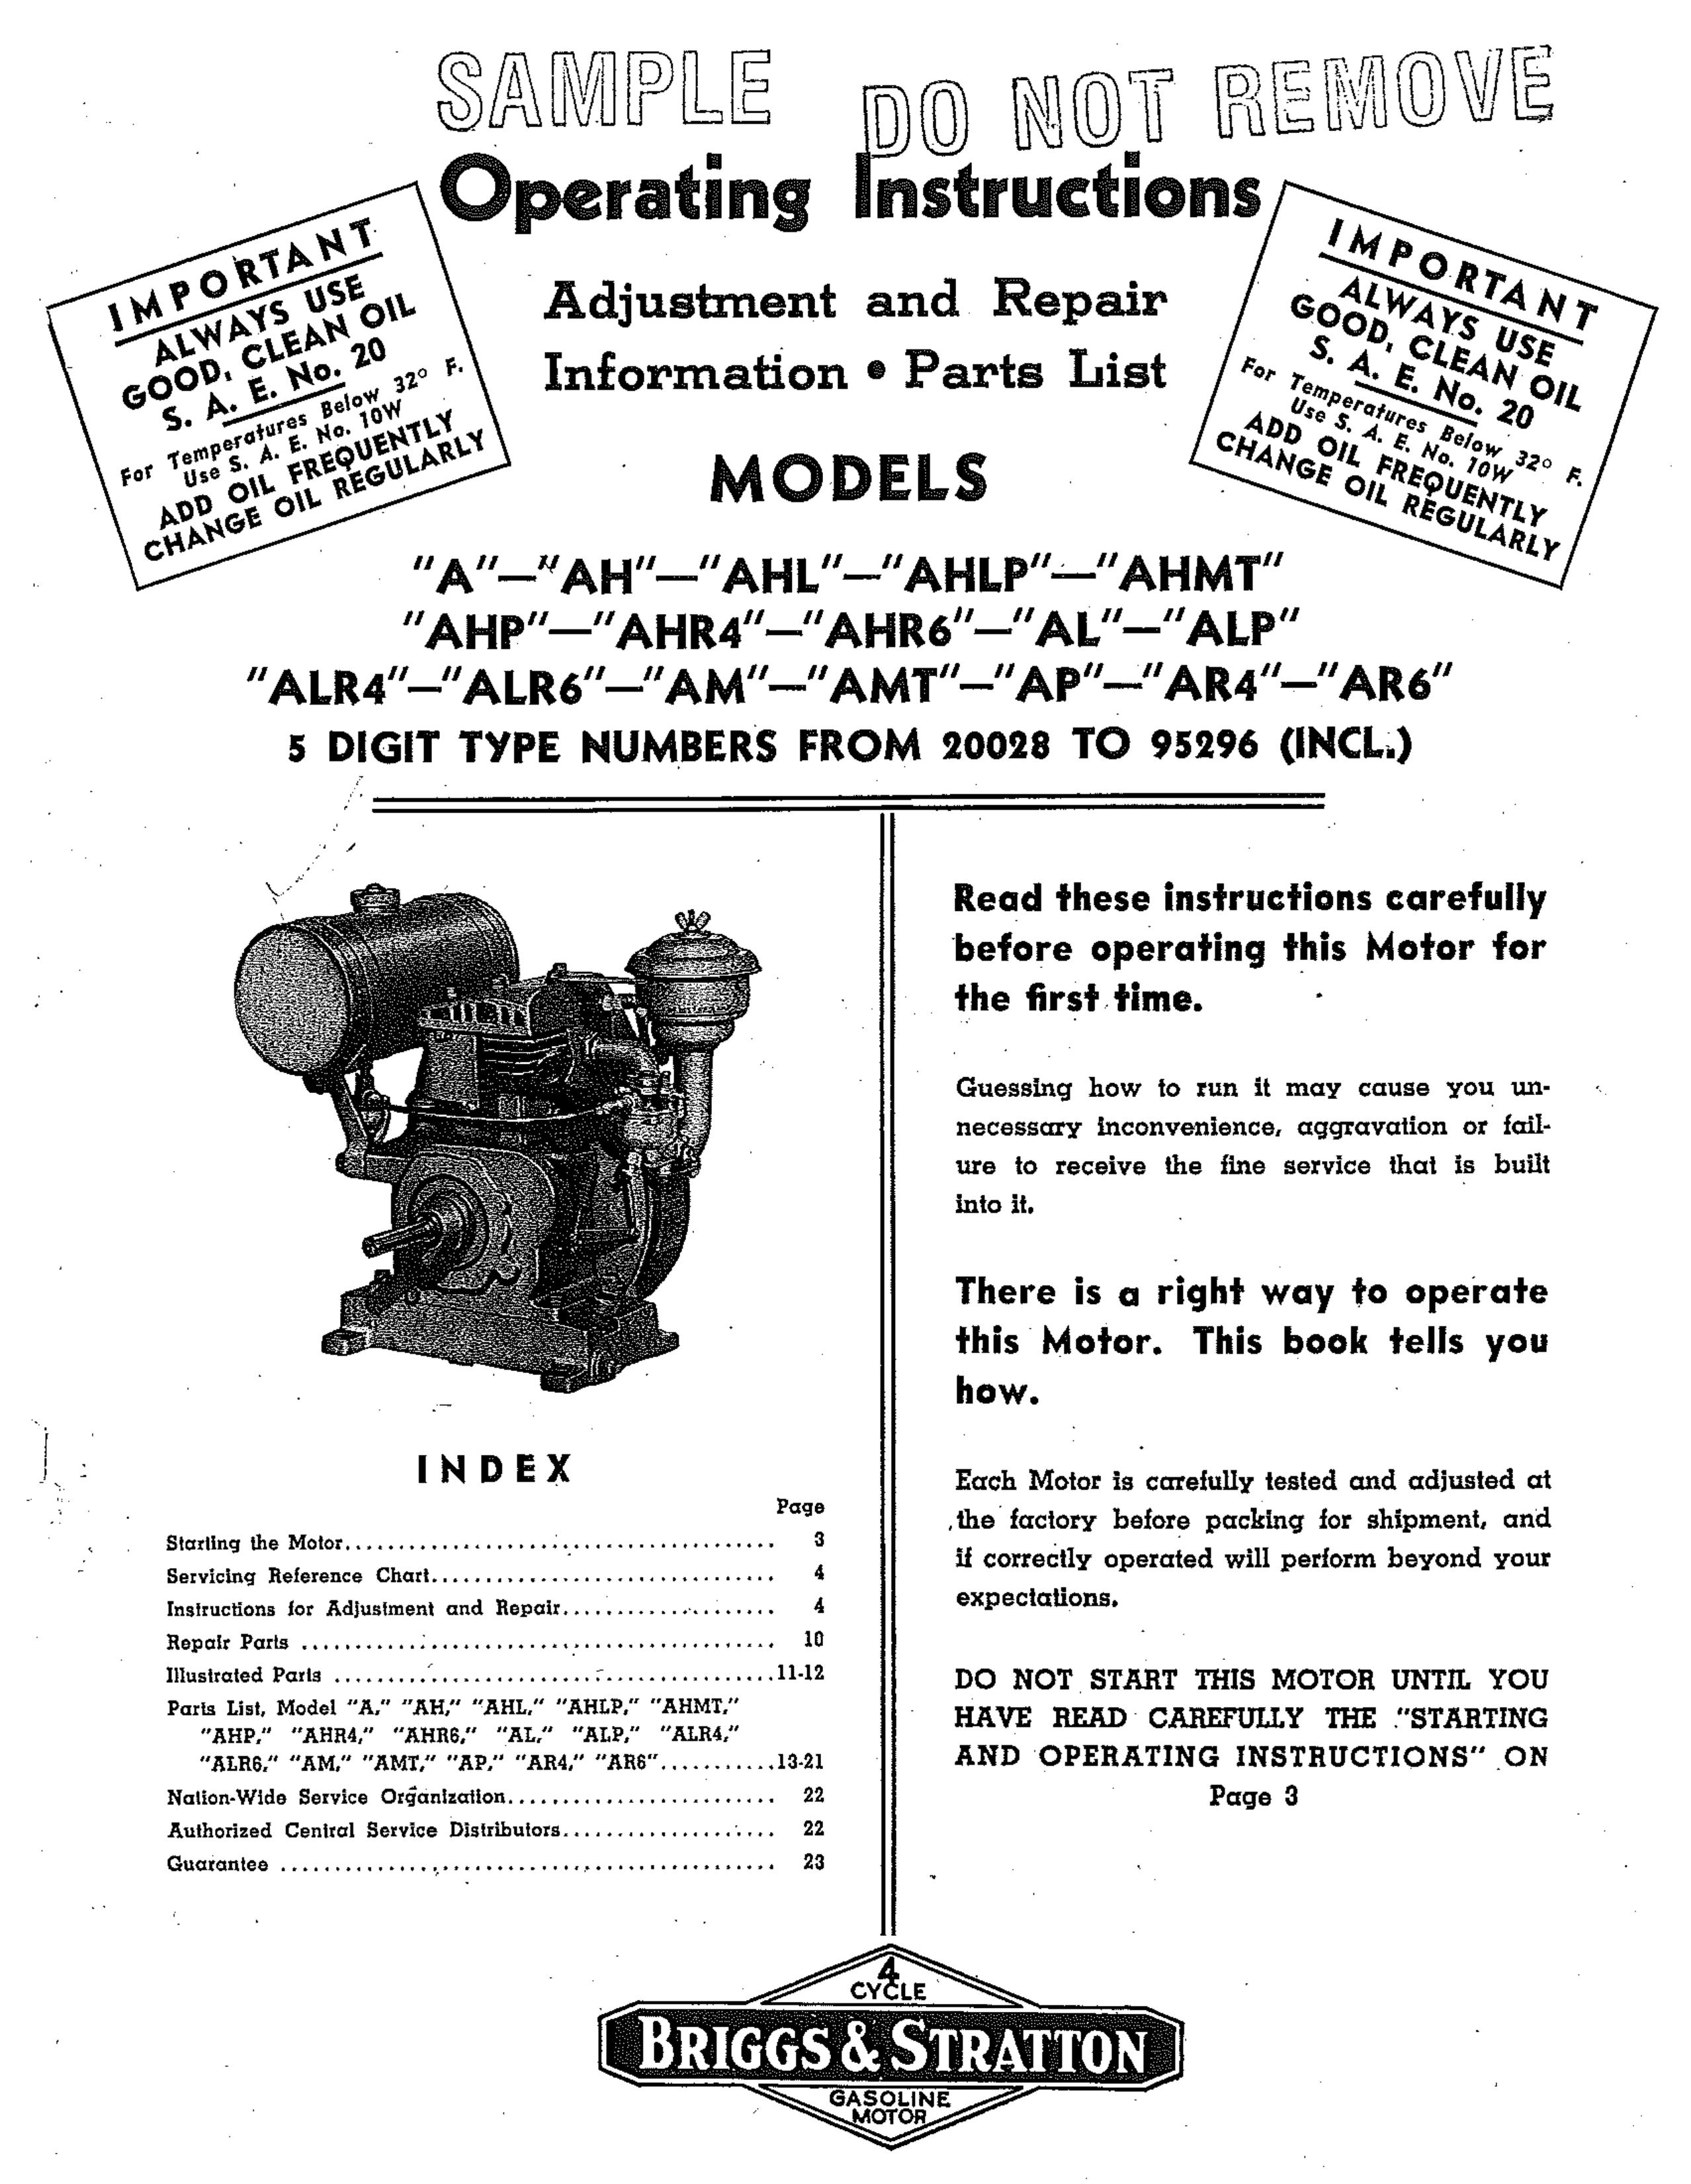 Briggs & Stratton ALP Outboard Motor User Manual